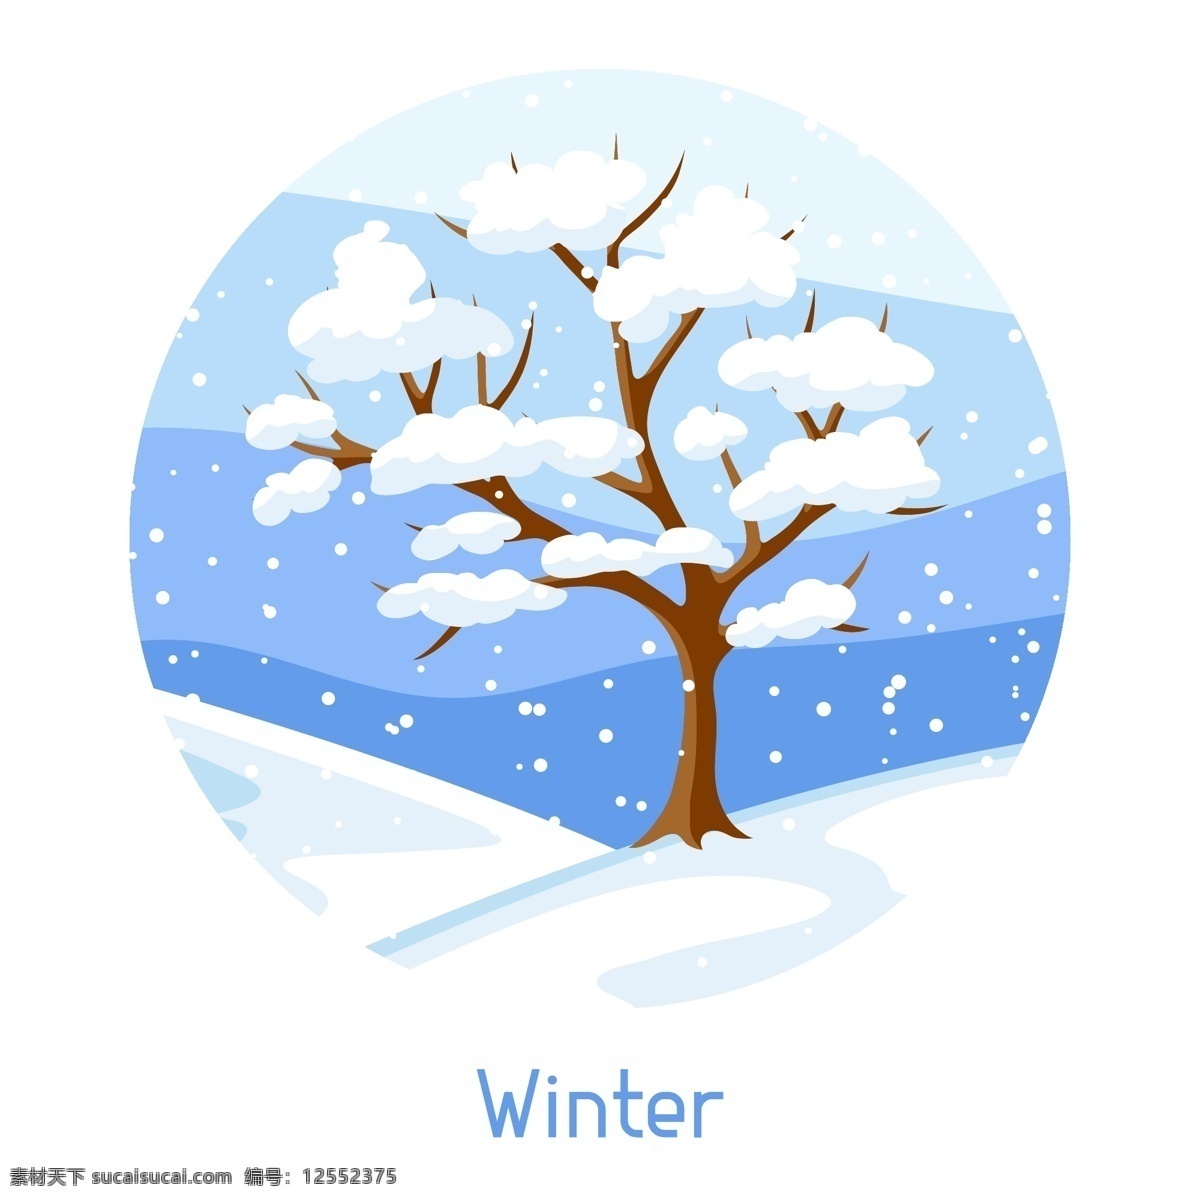 冬天 大树 插画 下雪 雪花 风景 积雪